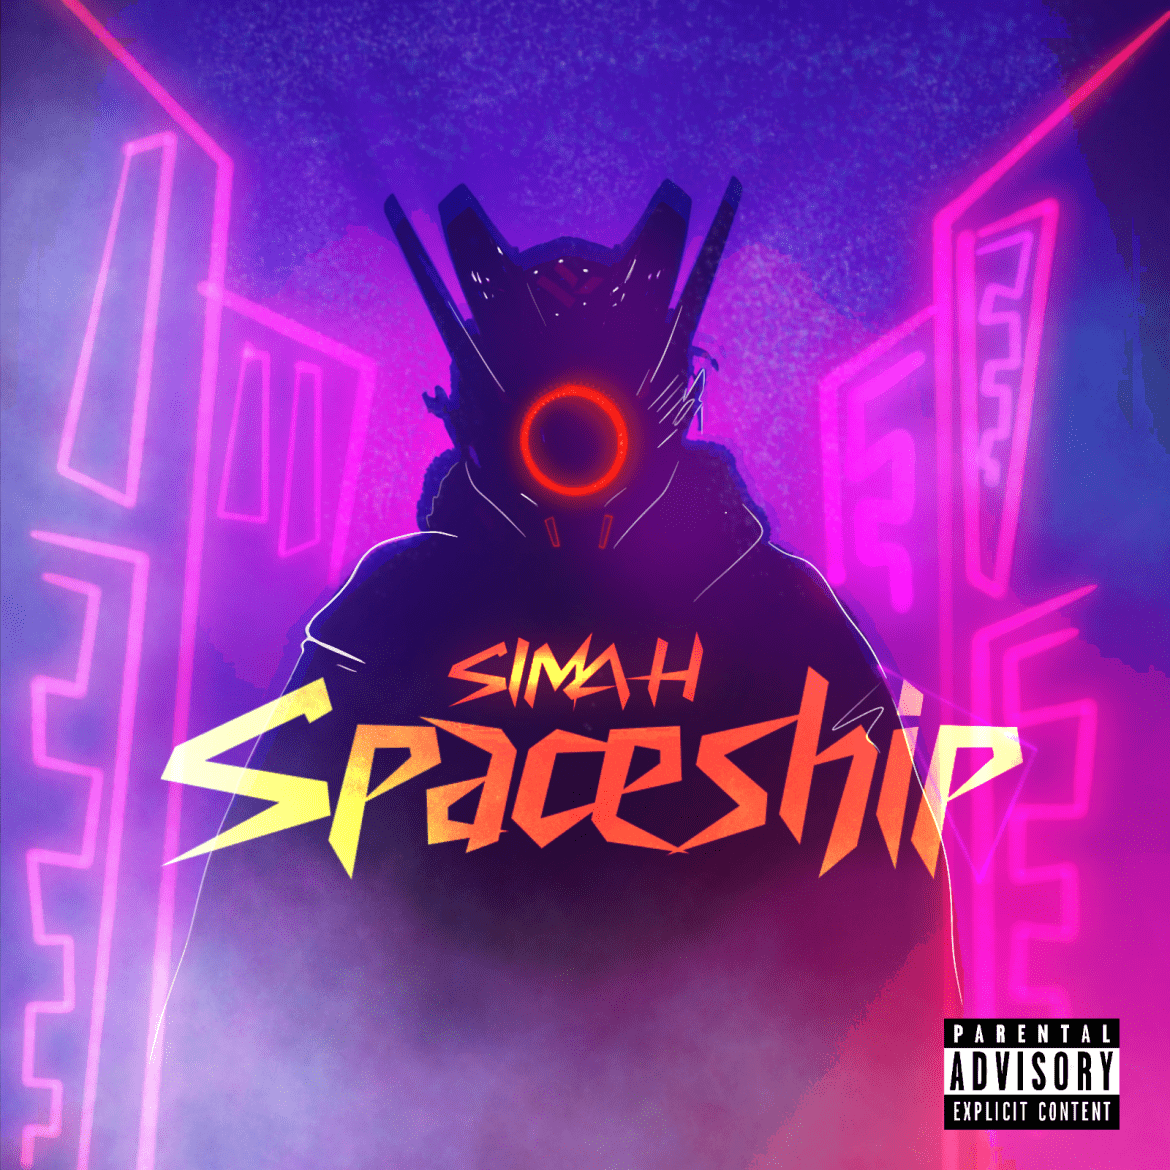 Cover , Aufschrift SIMAH Spaceship , hinter dem Titel eine Person mit einer Maske mit einem sichtbaren Roten Ring in der Mitte . Hintergrund neon pink /lila